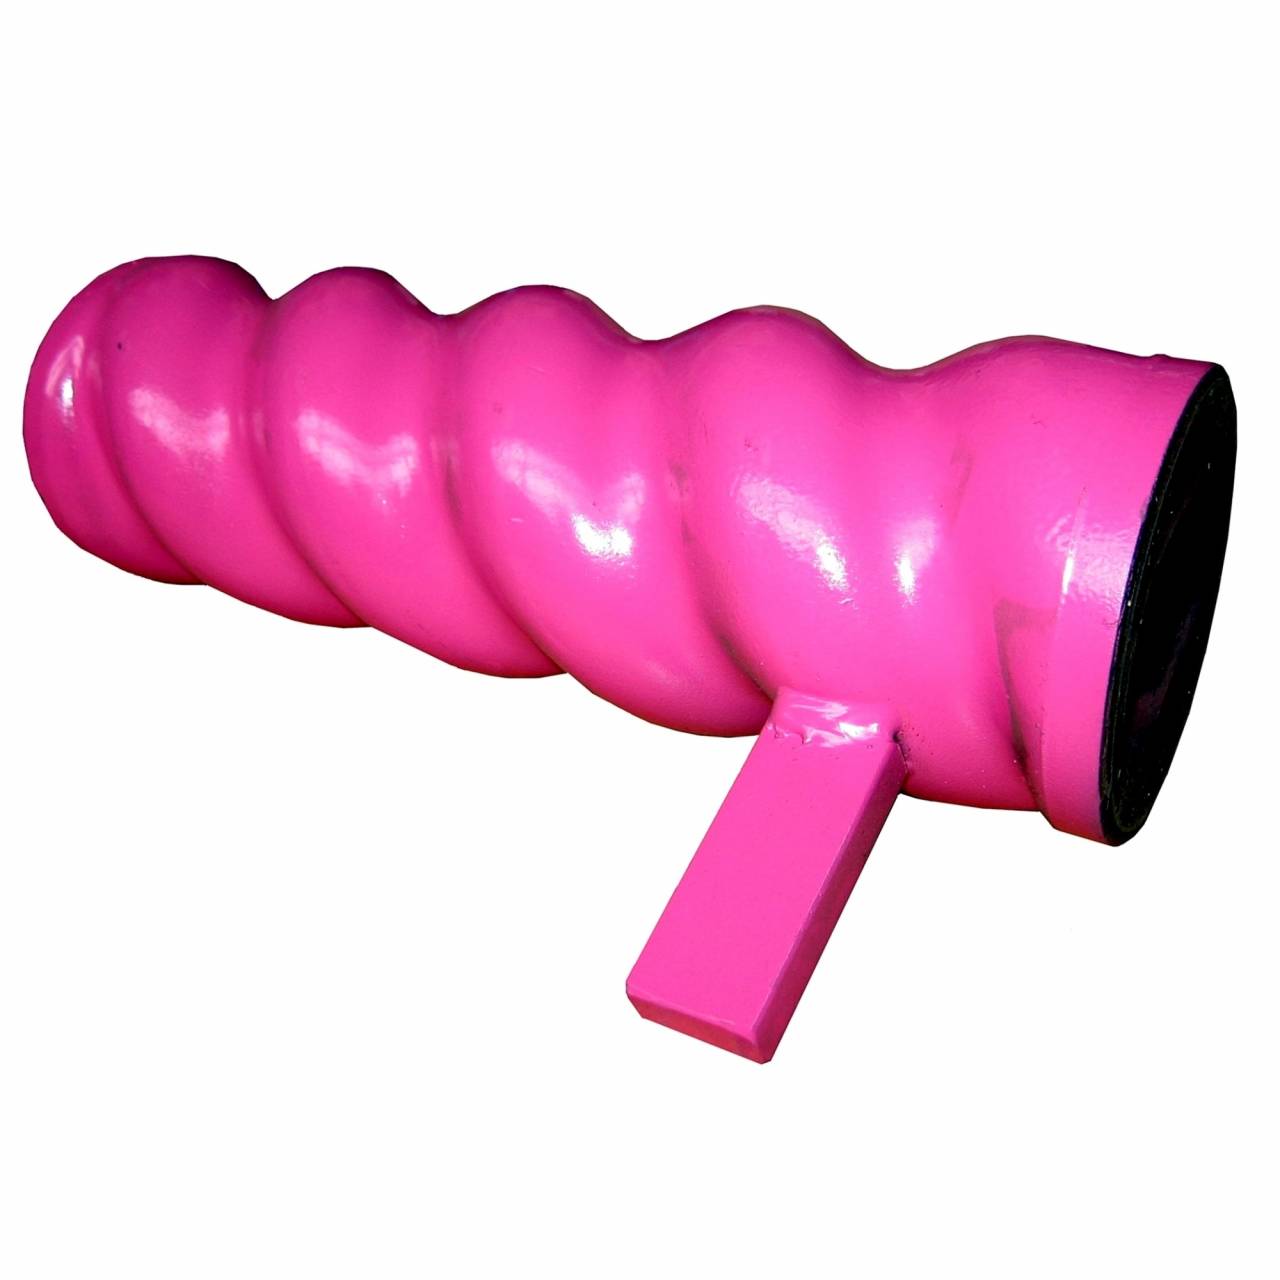 Schneckenmantel / Stator D5-2,5 'Drill' pink